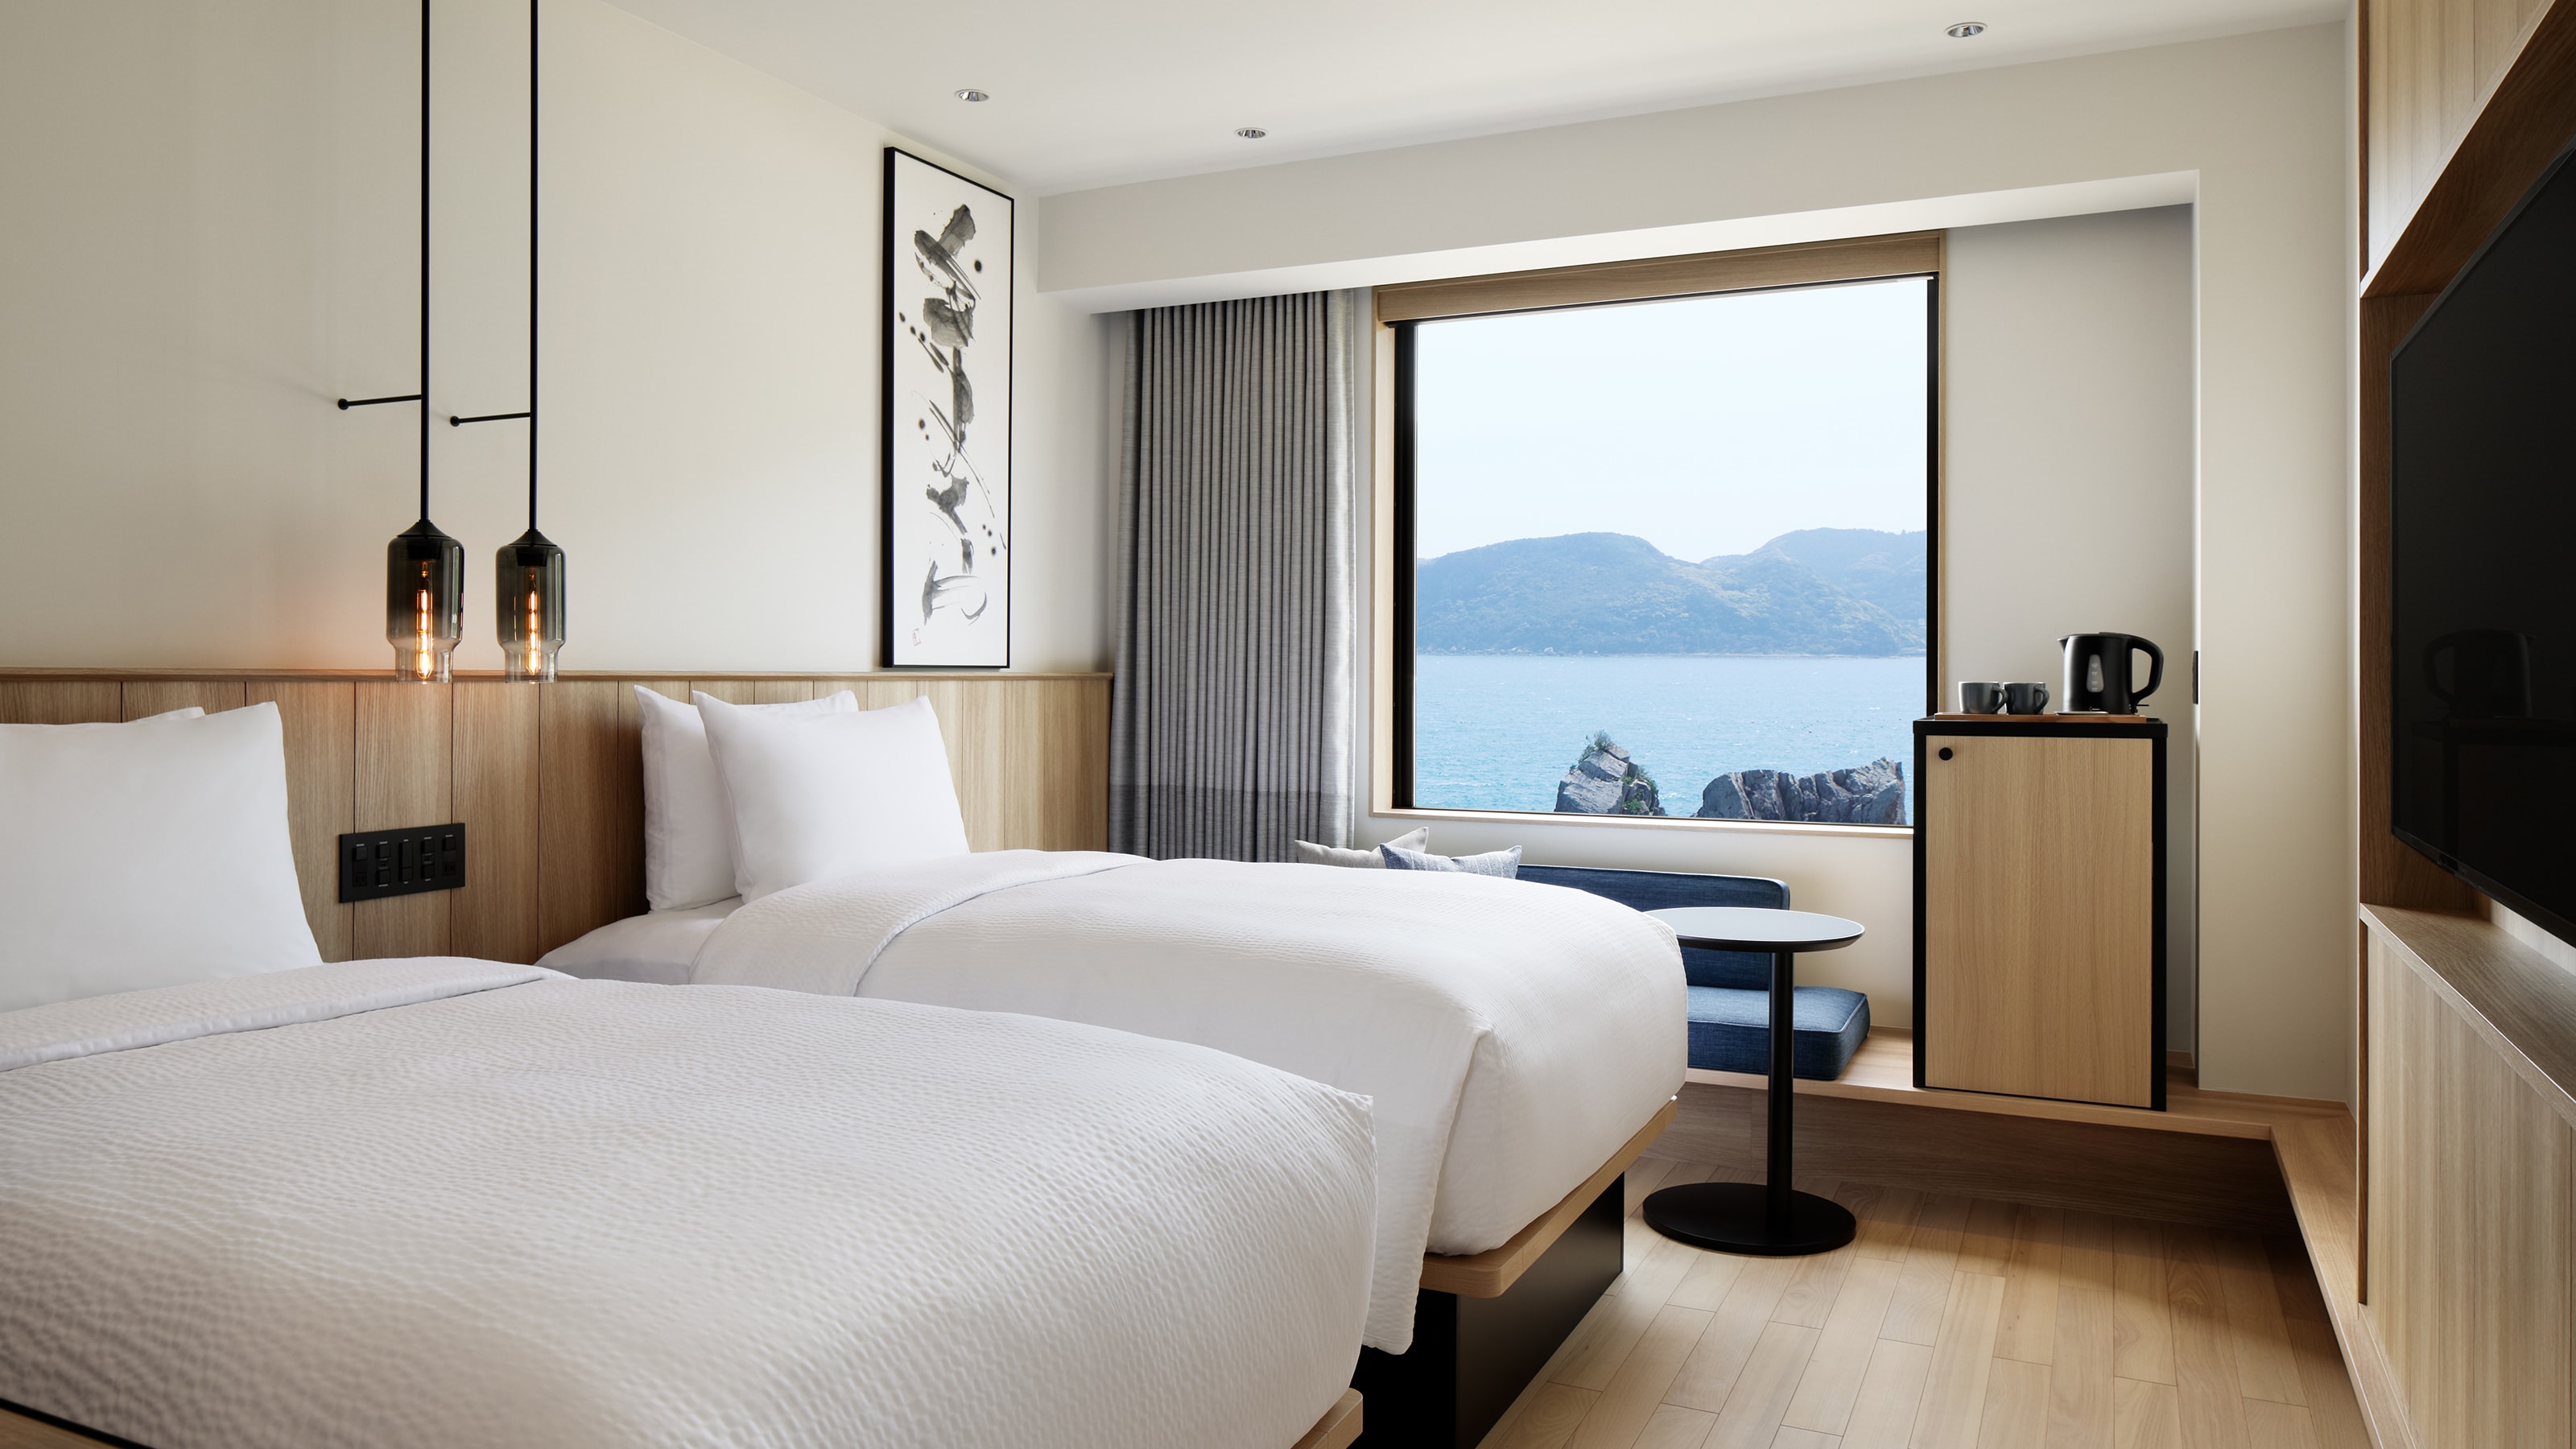 Kamar twin dengan pemandangan laut: 25 meter persegi, bebas rokok, lebar tempat tidur 120 cm Nikmati momen bersantai di kamar dengan pemandangan laut.